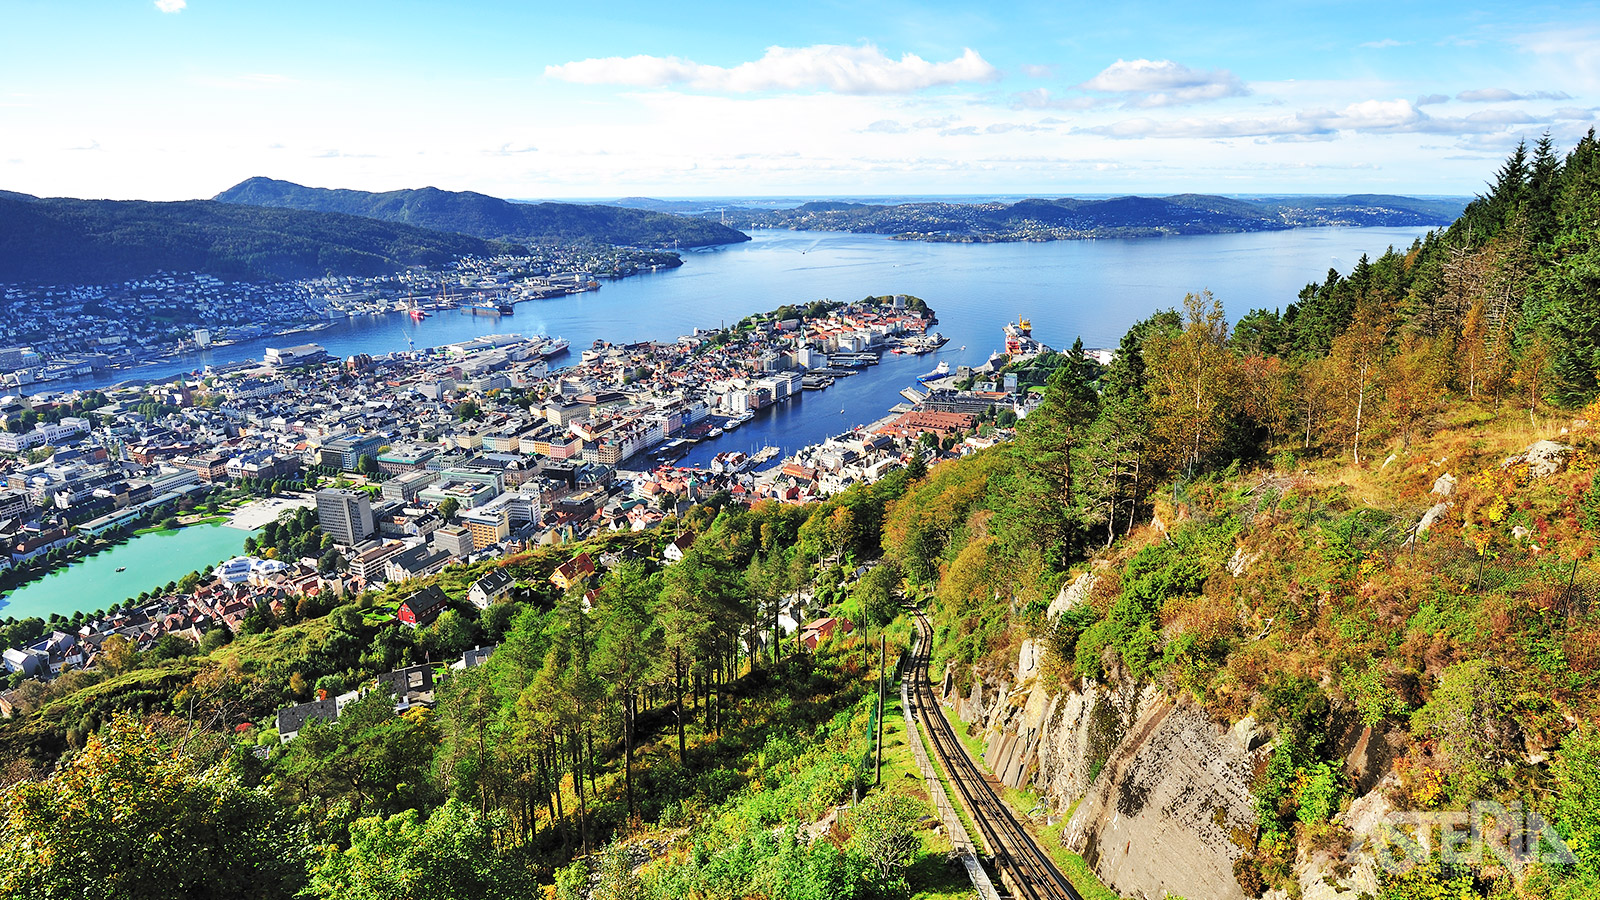 Voor een fantastisch zicht op Bergen kun je naar de top van de berg Fløyen